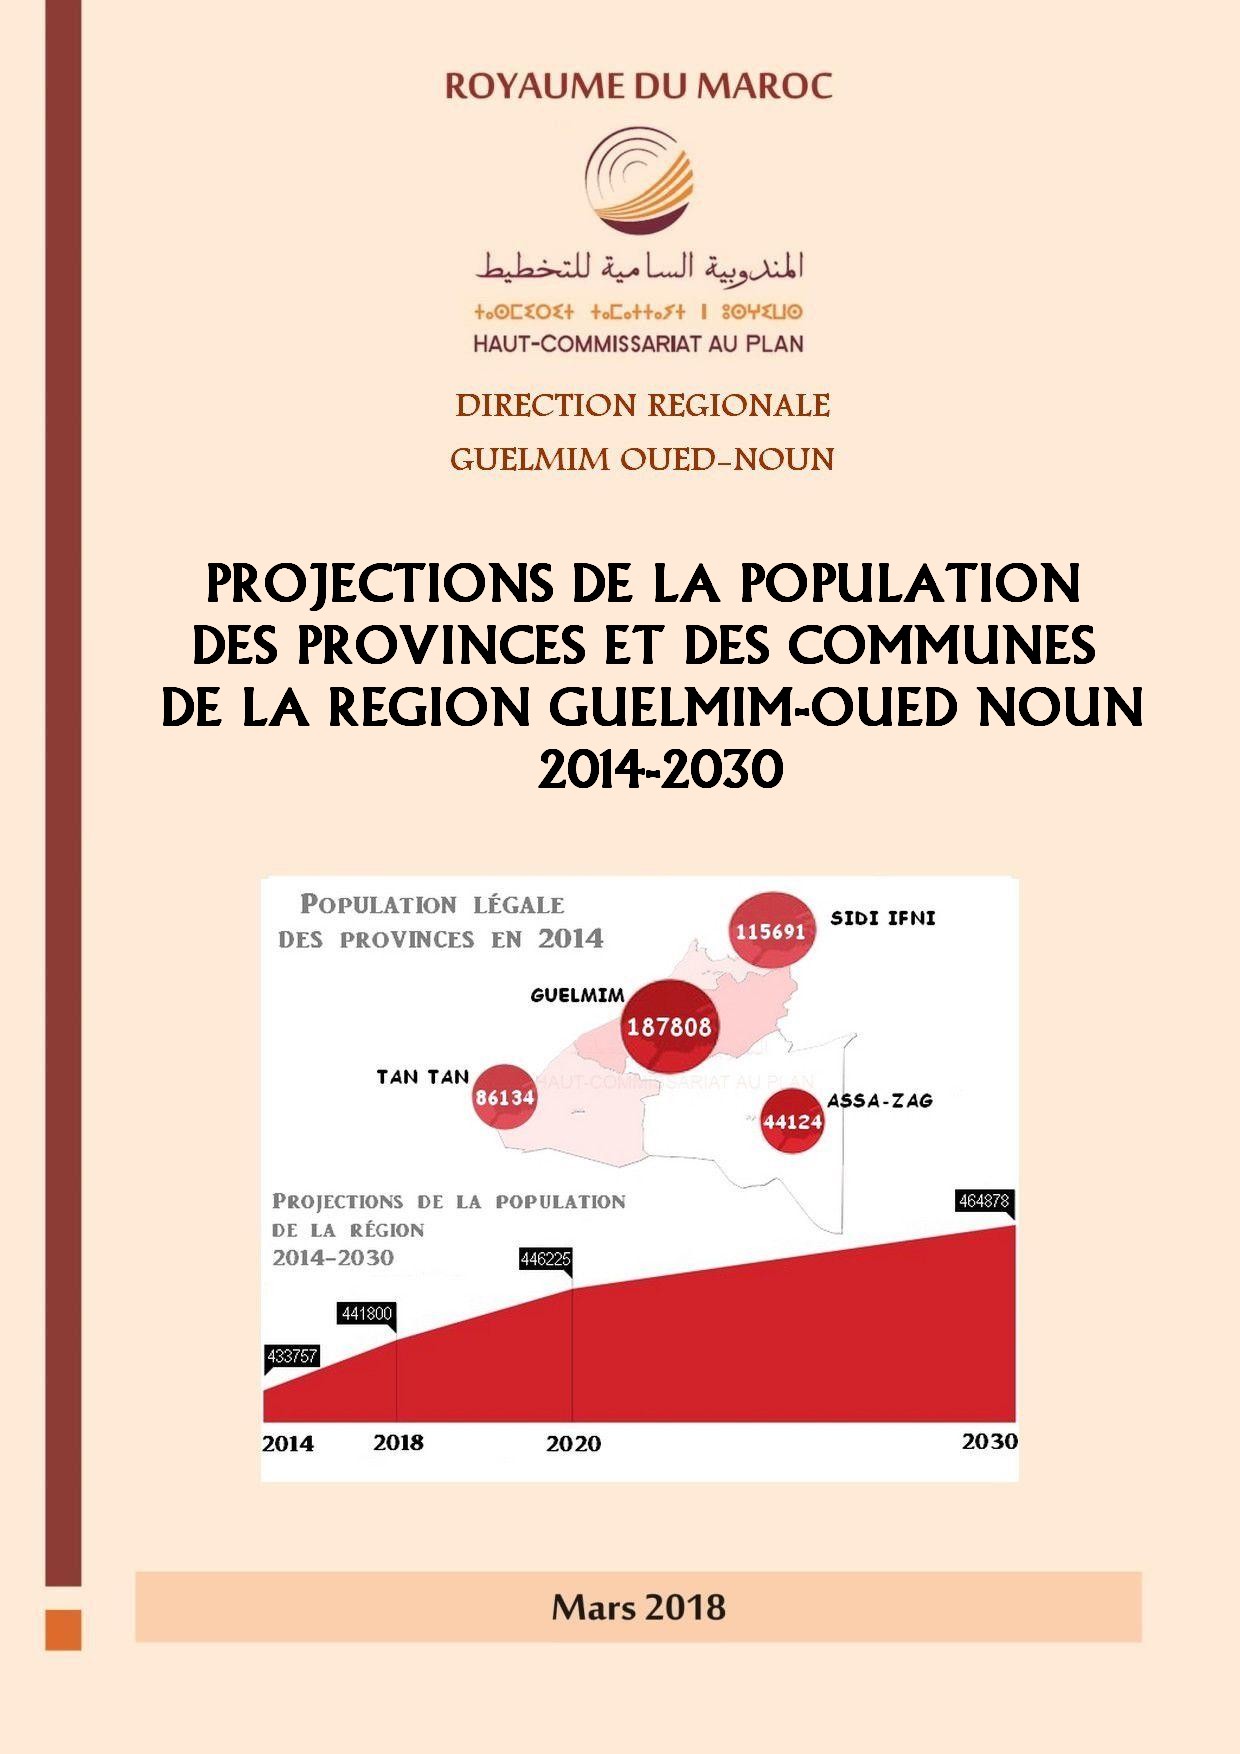 PROJECTIONS DE LA POPULATION  DE LA REGION GUELMIM.  2014-2030